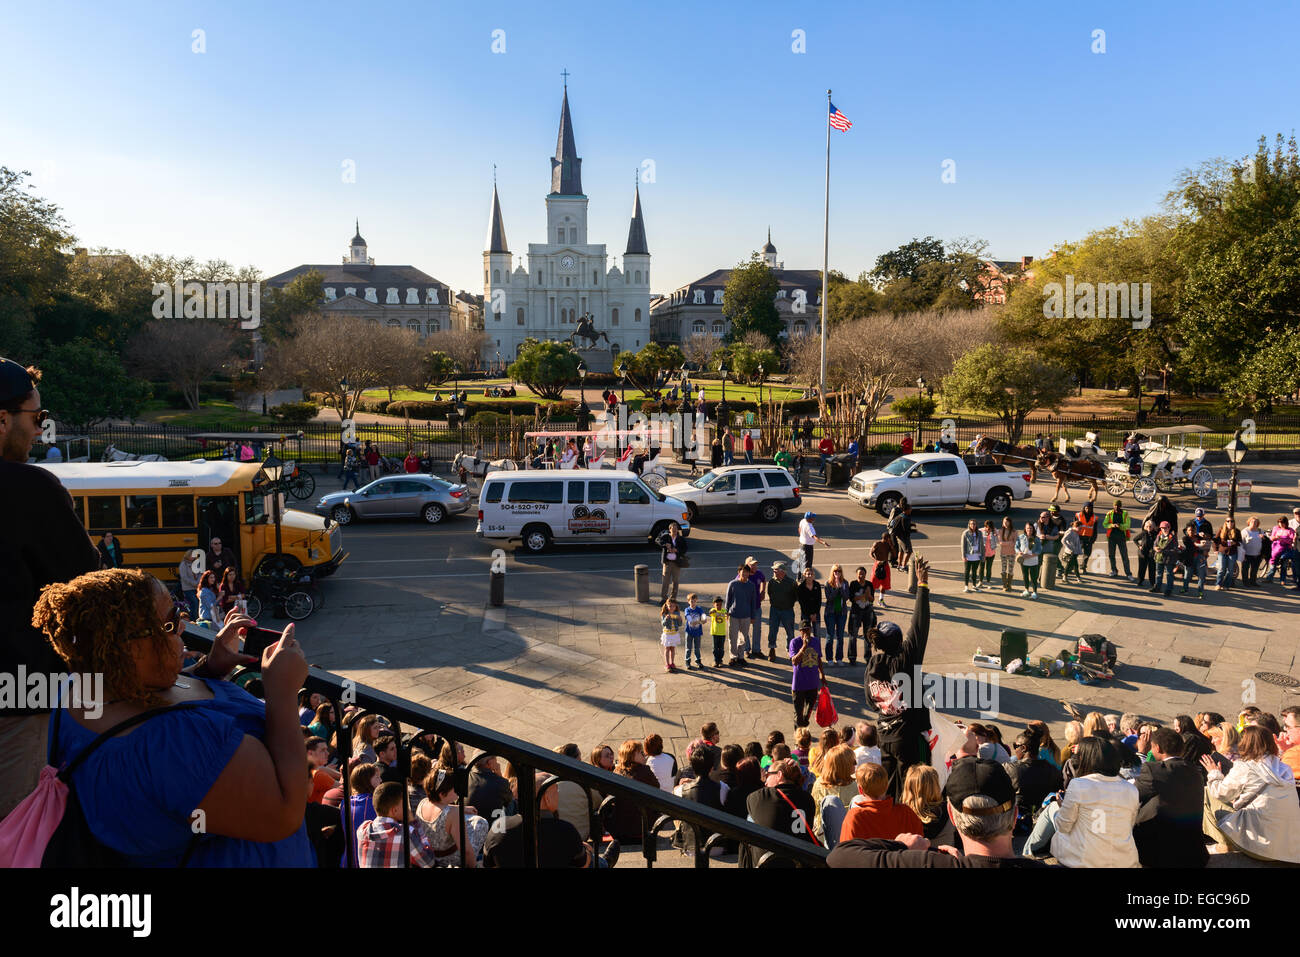 Straßenperformance sammelt eine Menge von Touristen im French Quarter von New Orleans. Stockfoto